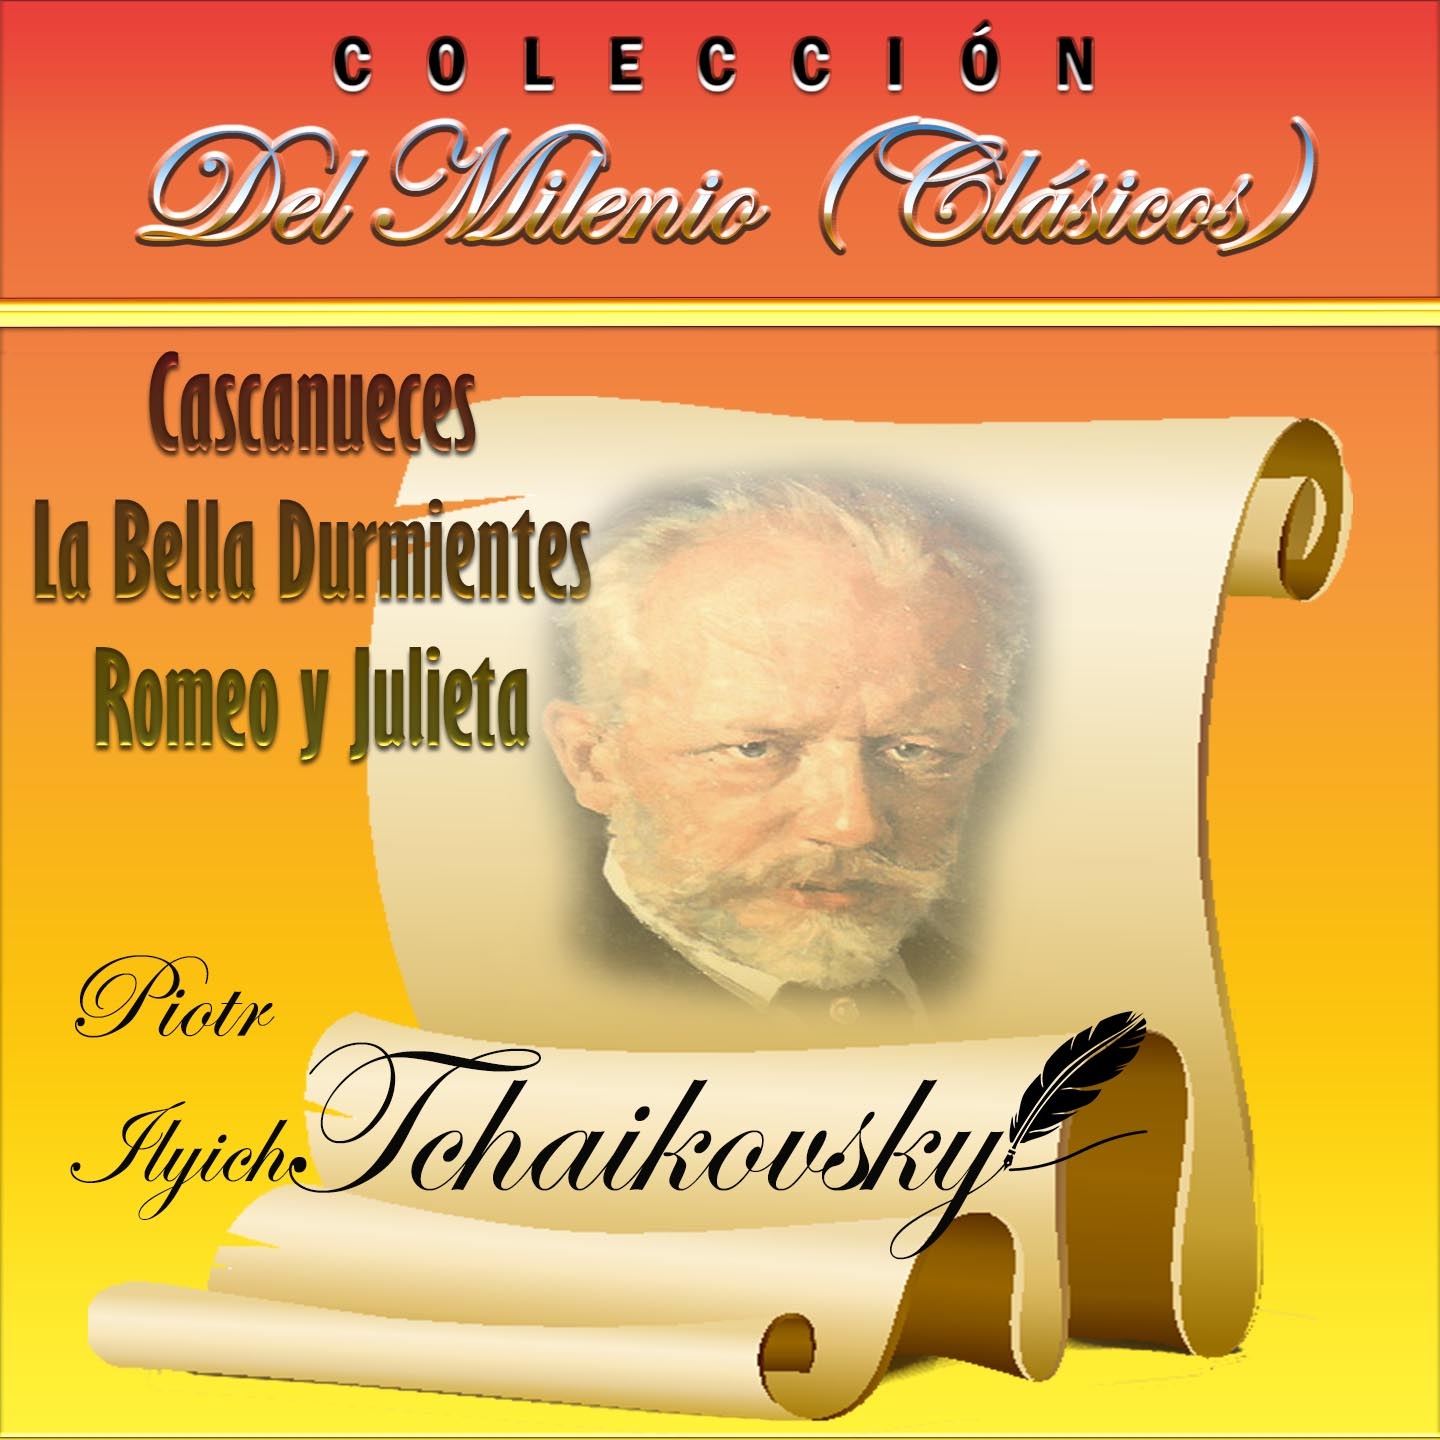 Coleccio n del Milenio: Cascanueces, La Bella Durmiente, Romeo y Julieta